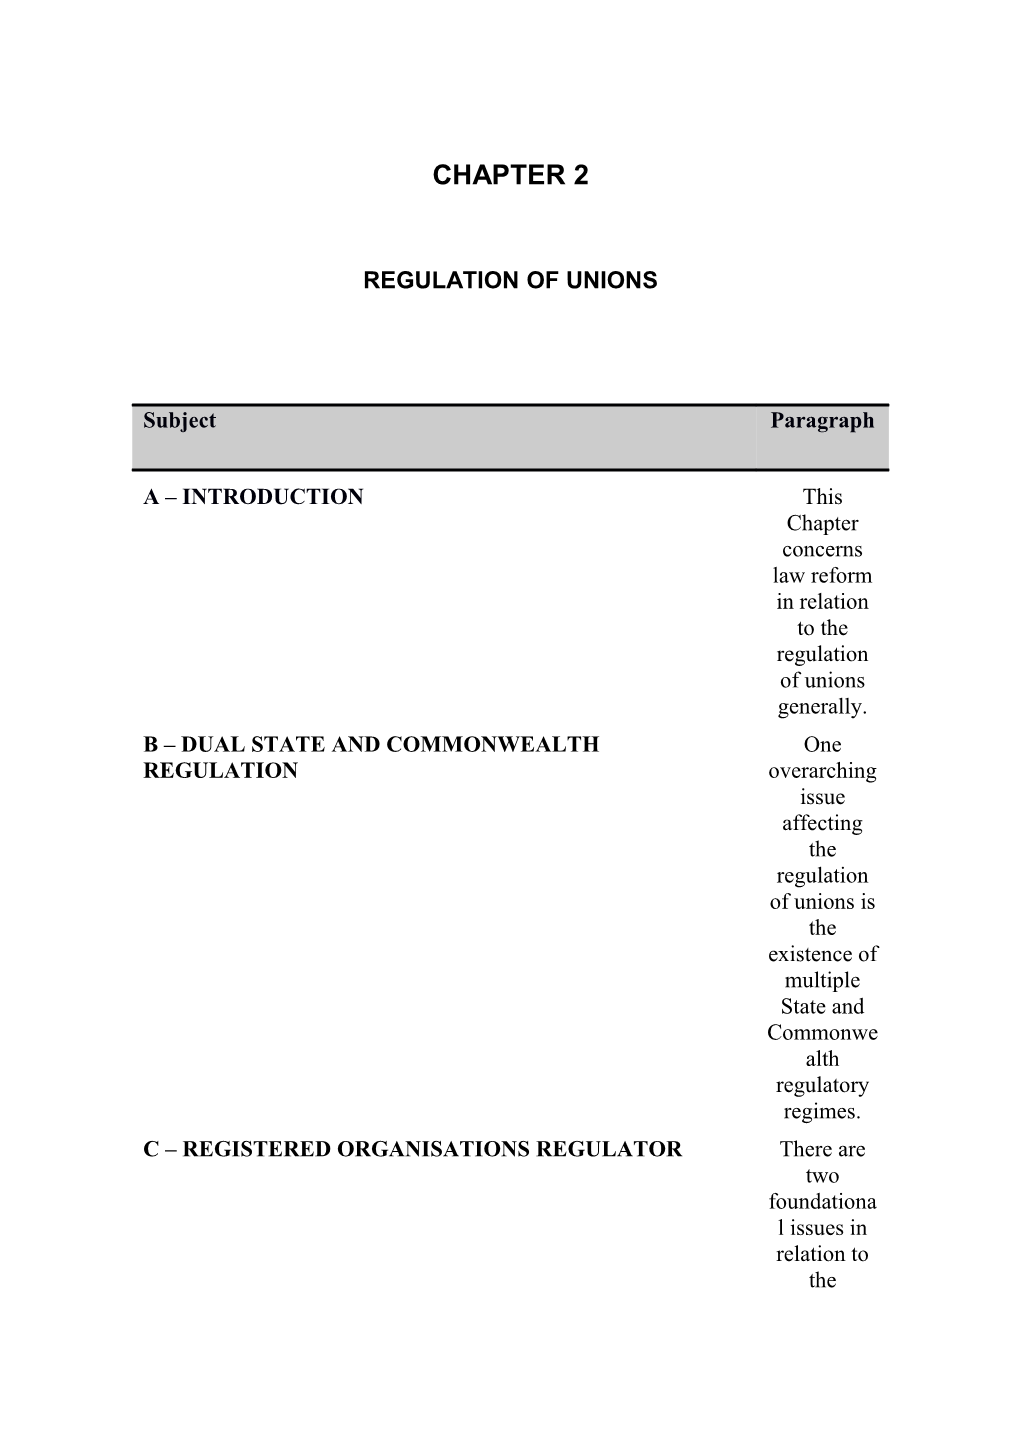 Regulation of Unions